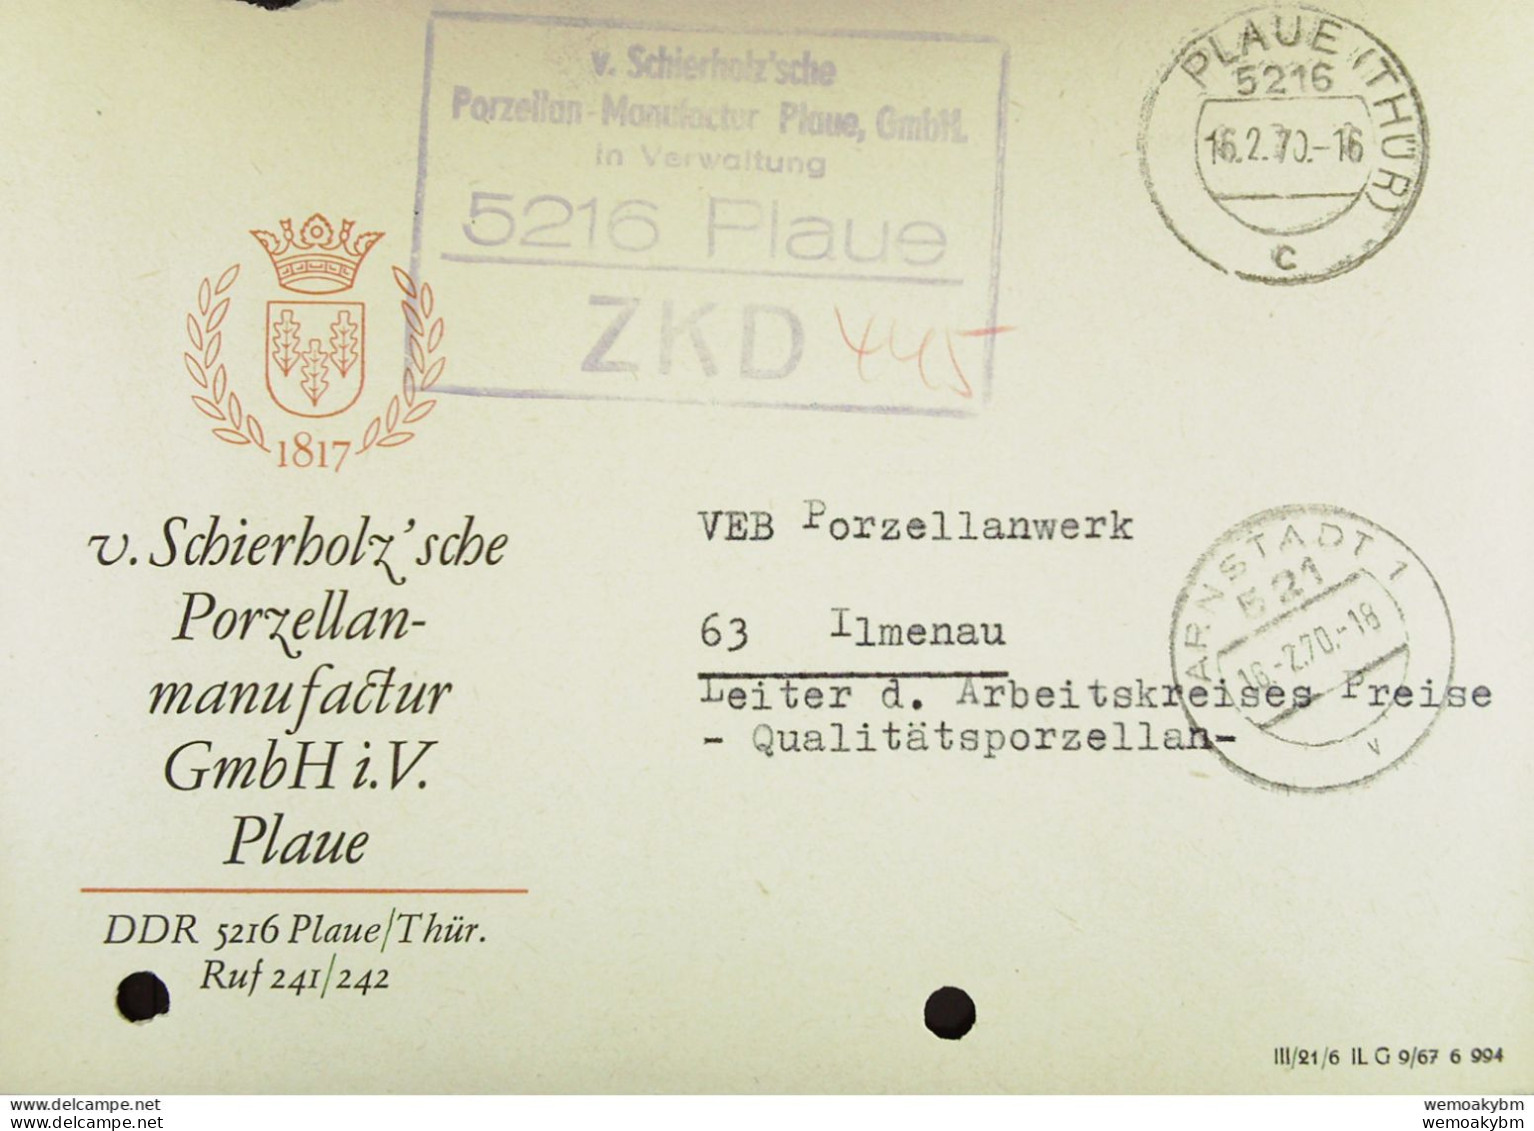 DDR: Fern-Brief Mit ZKD-Kastenst. "v. Schierholzsche Porzellan-Manufaktur Plaue, GmbH. 5216 PLAUE" 16.2.70 Nach Ilmenau - Central Mail Service